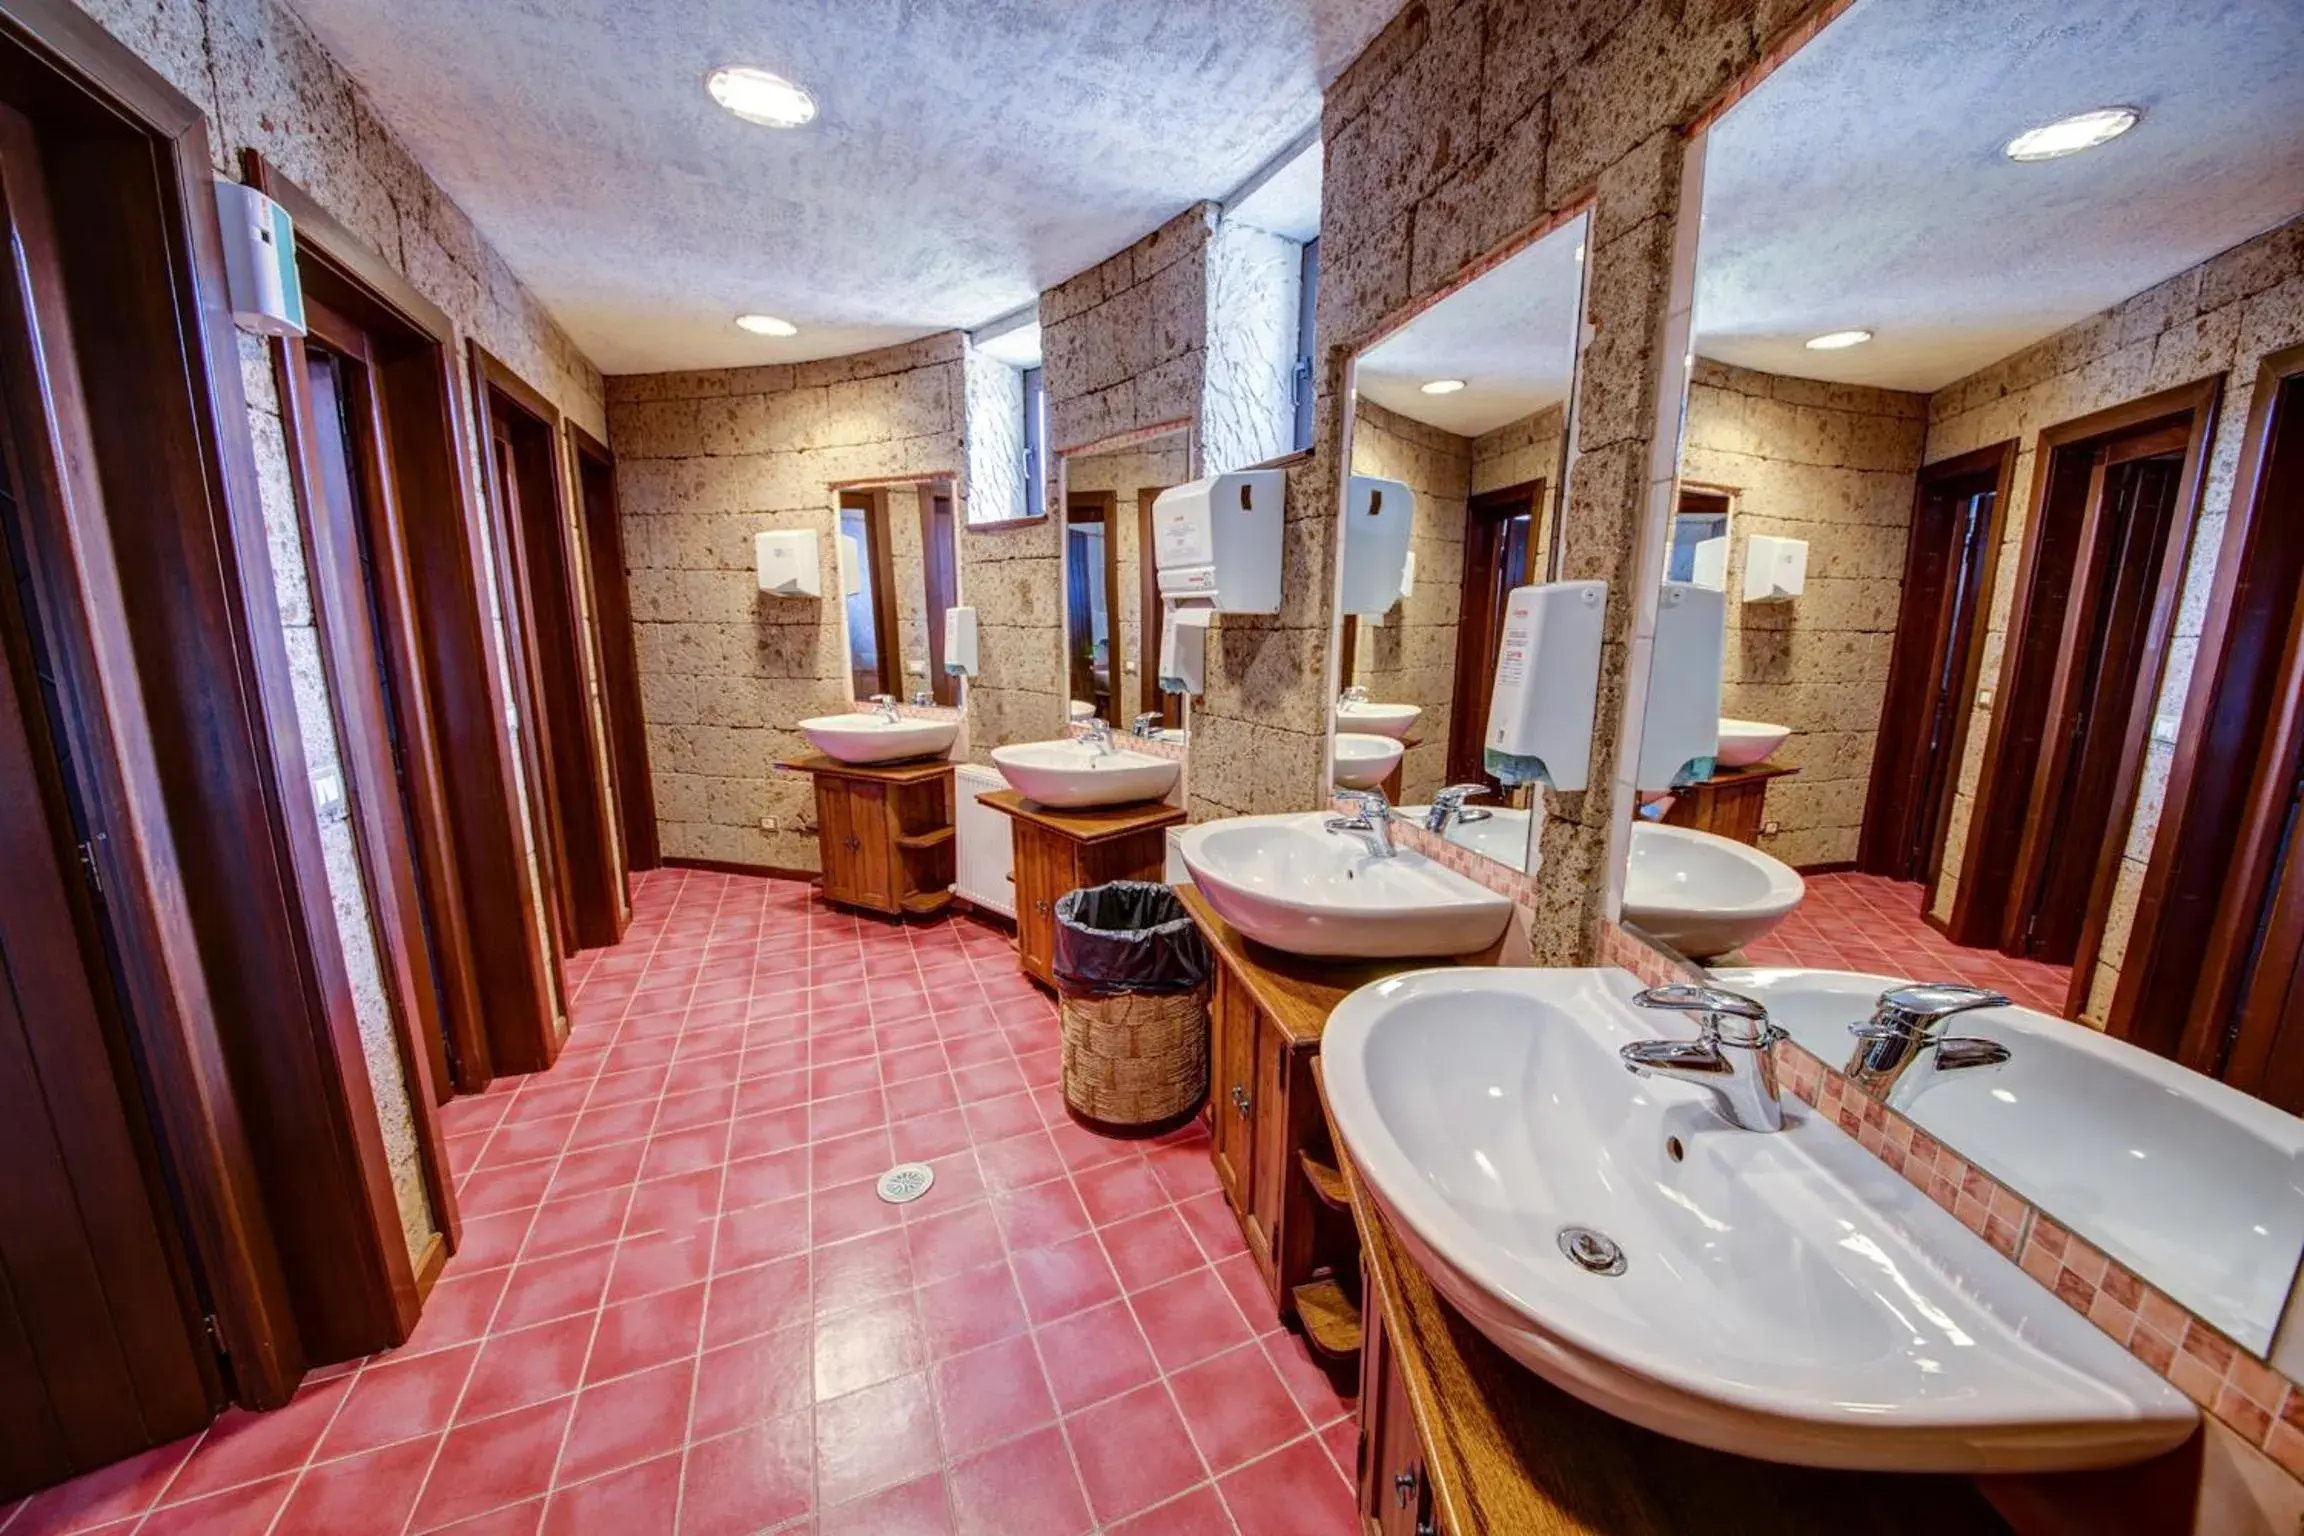 Toilet, Bathroom in House of Dracula Hotel